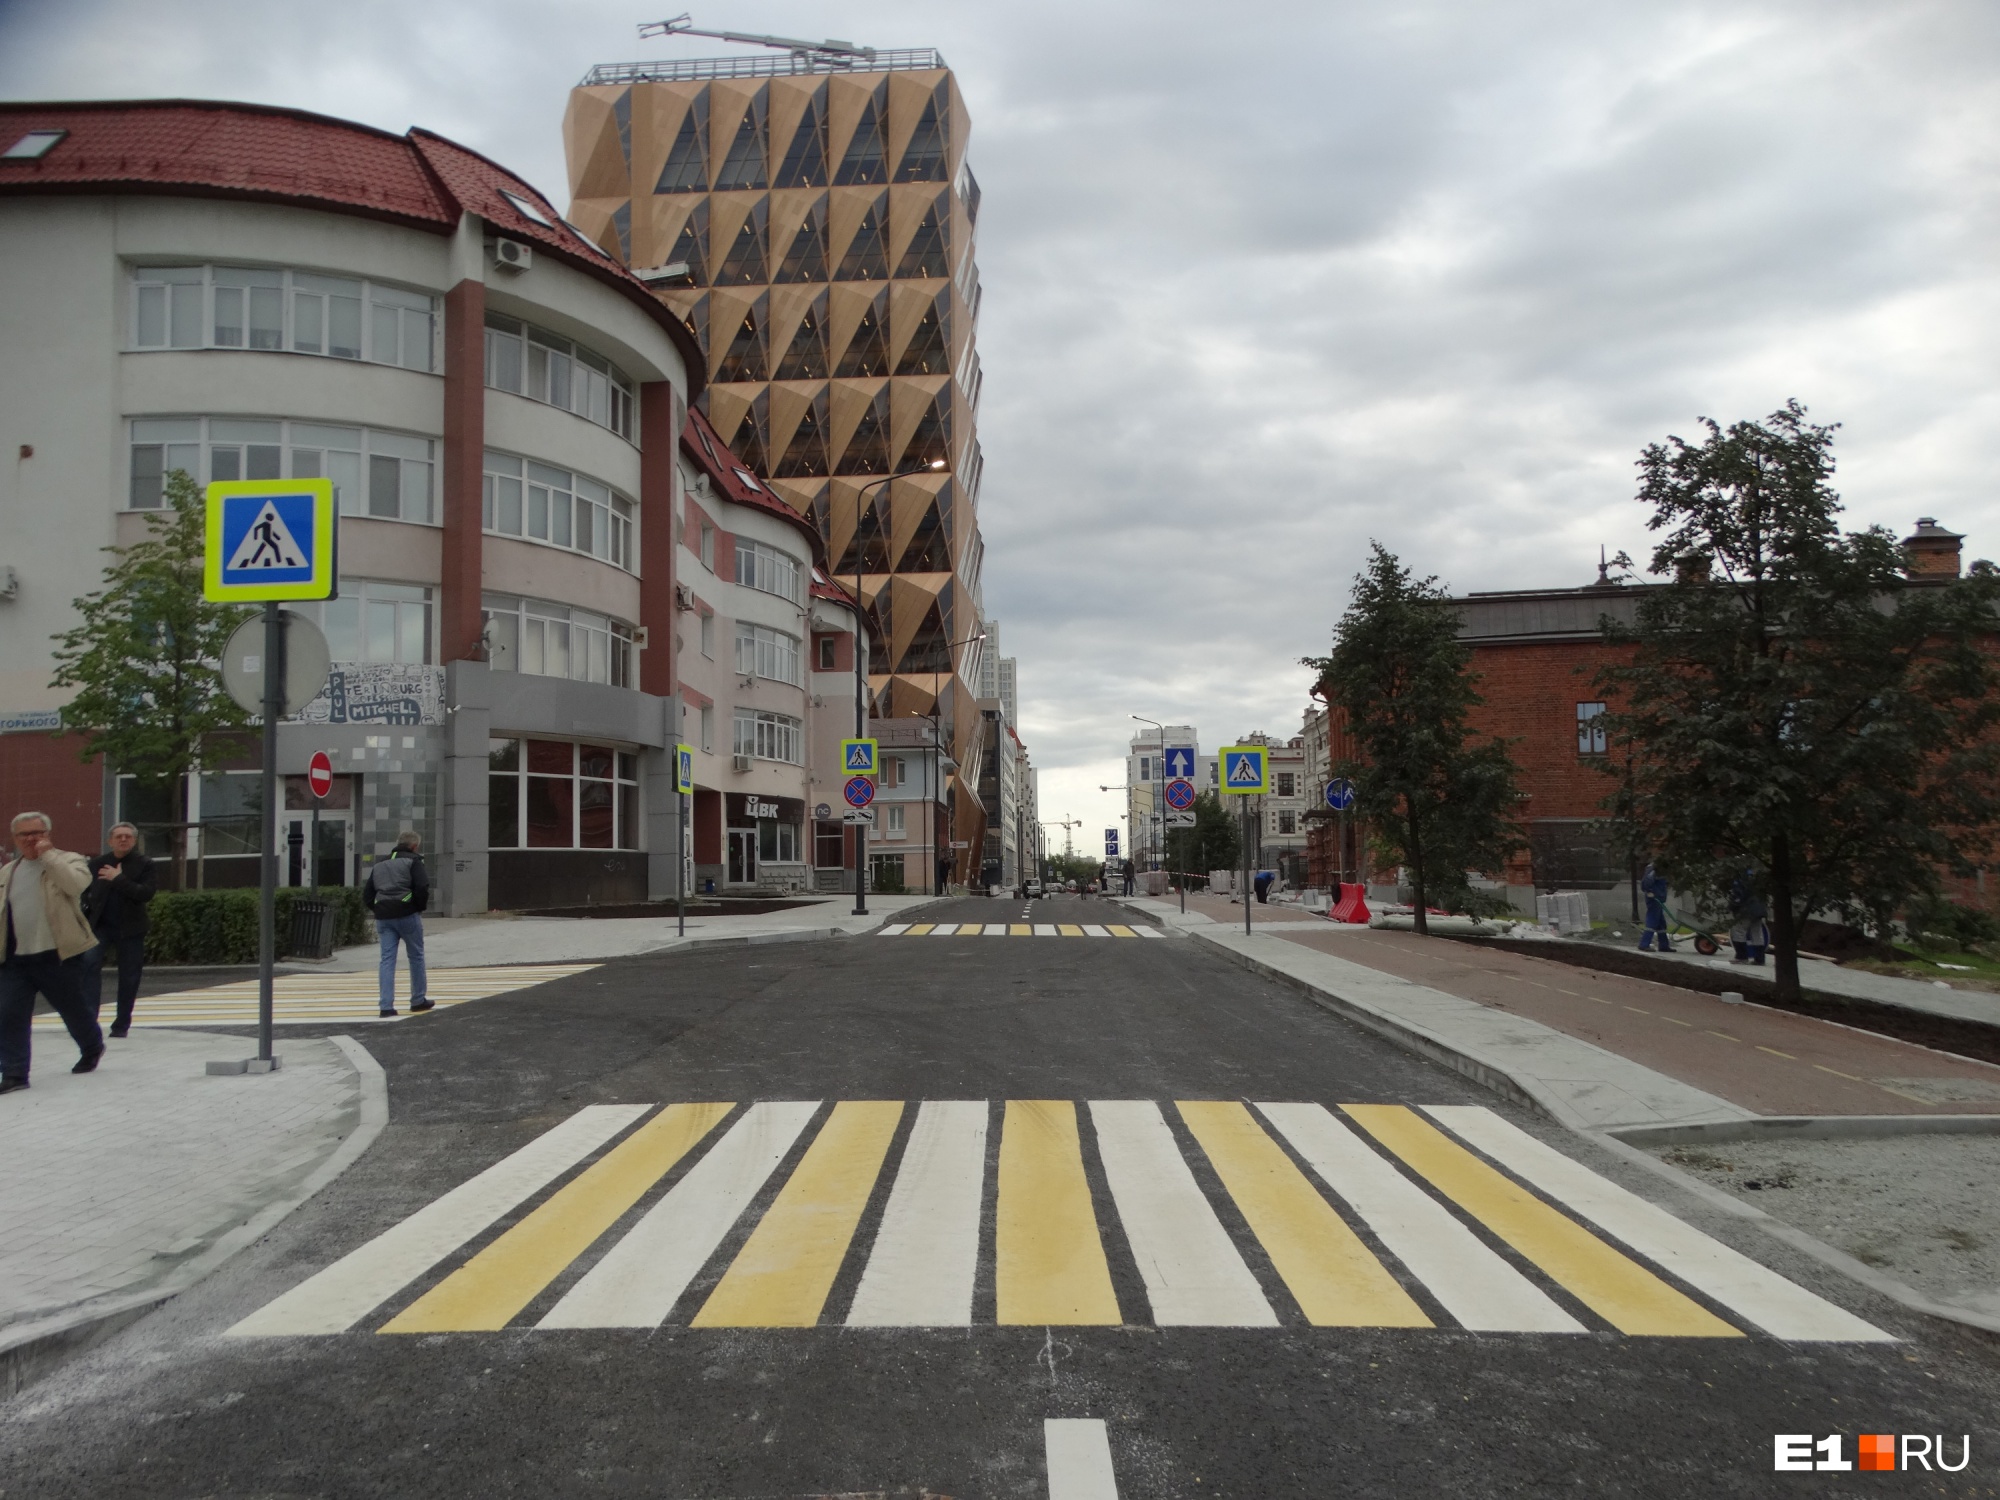 Раньше срока: в Екатеринбурге открыли сквозной проезд с улицы Горького на Куйбышева